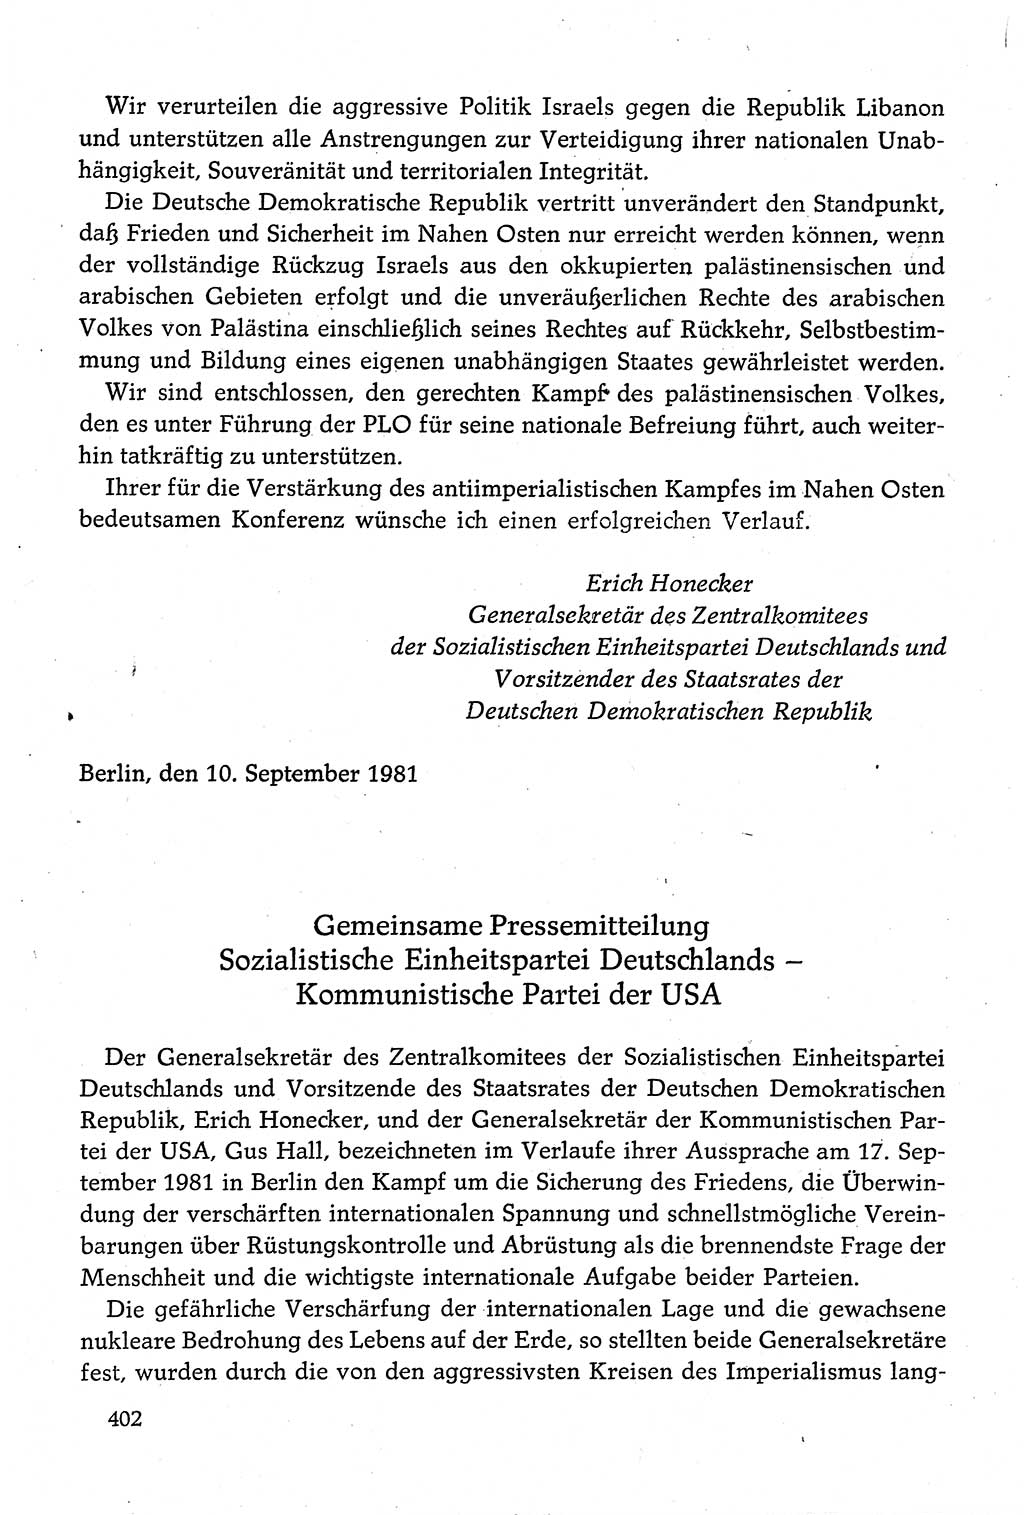 Dokumente der Sozialistischen Einheitspartei Deutschlands (SED) [Deutsche Demokratische Republik (DDR)] 1980-1981, Seite 402 (Dok. SED DDR 1980-1981, S. 402)